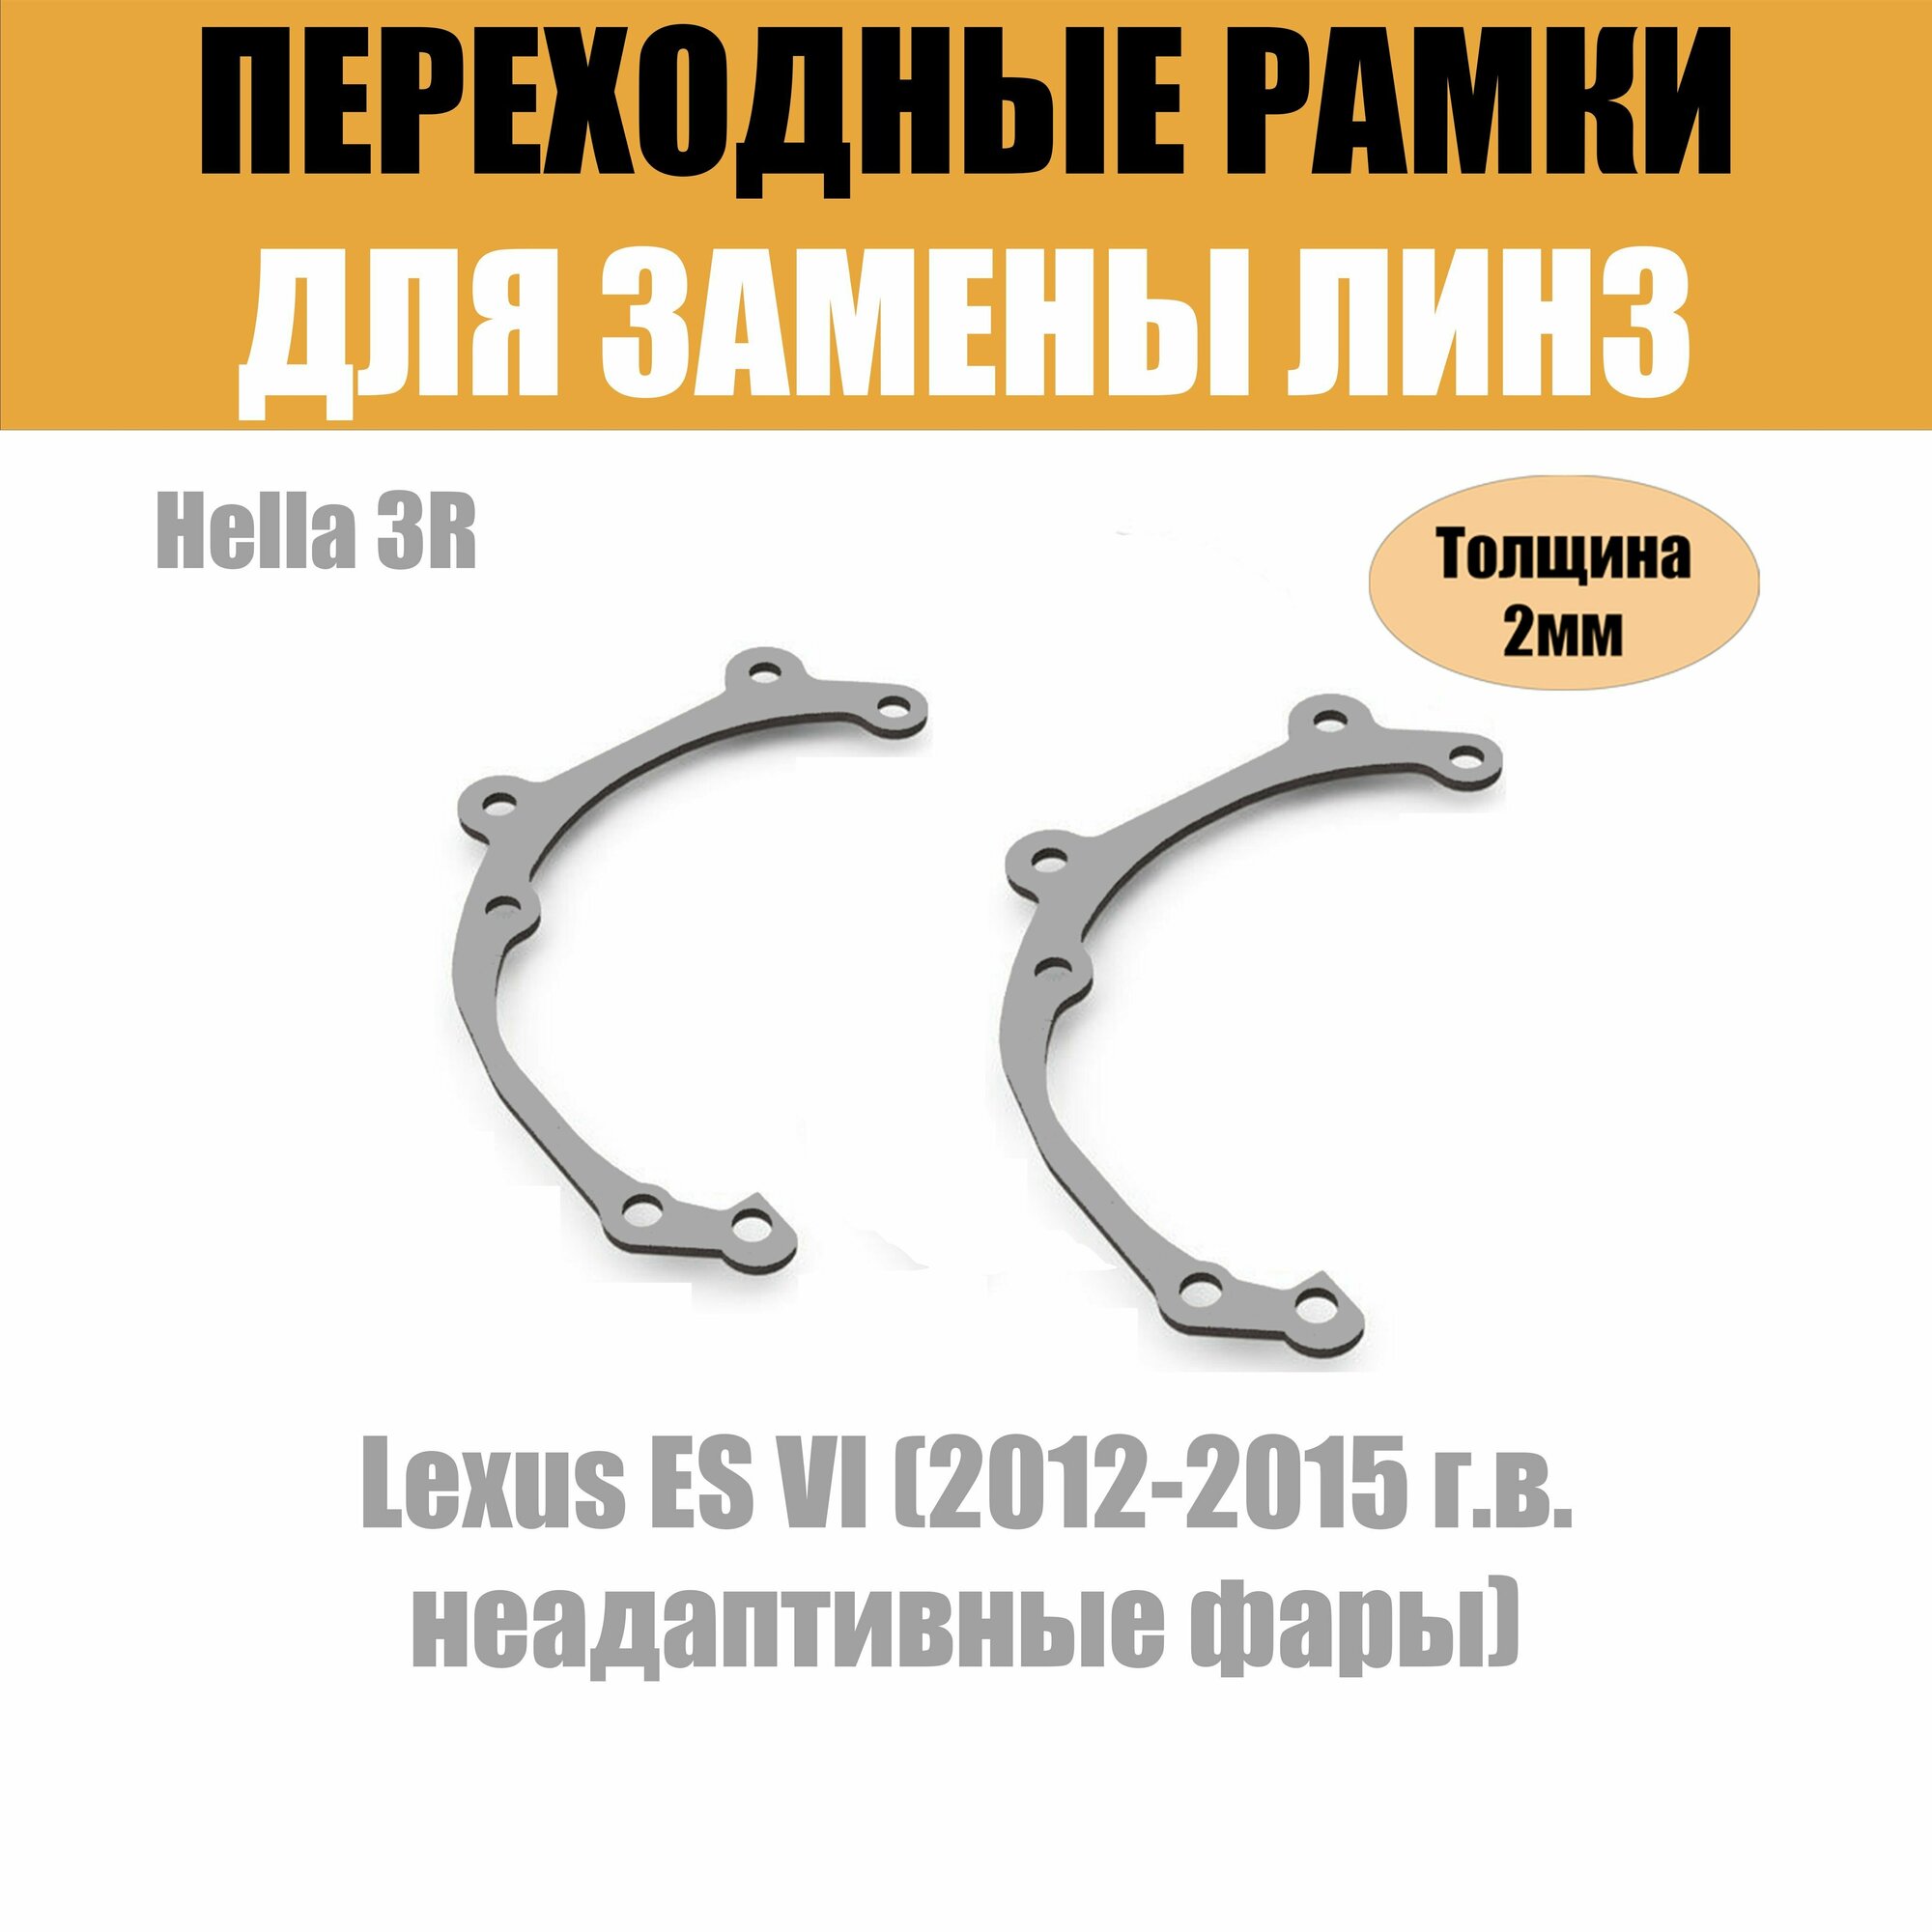 Переходные рамки для Lexus ES VI (2012-2015 г. в. неадаптивные фары) под модуль Hella 3R/Hella 3 (Комплект 2шт)